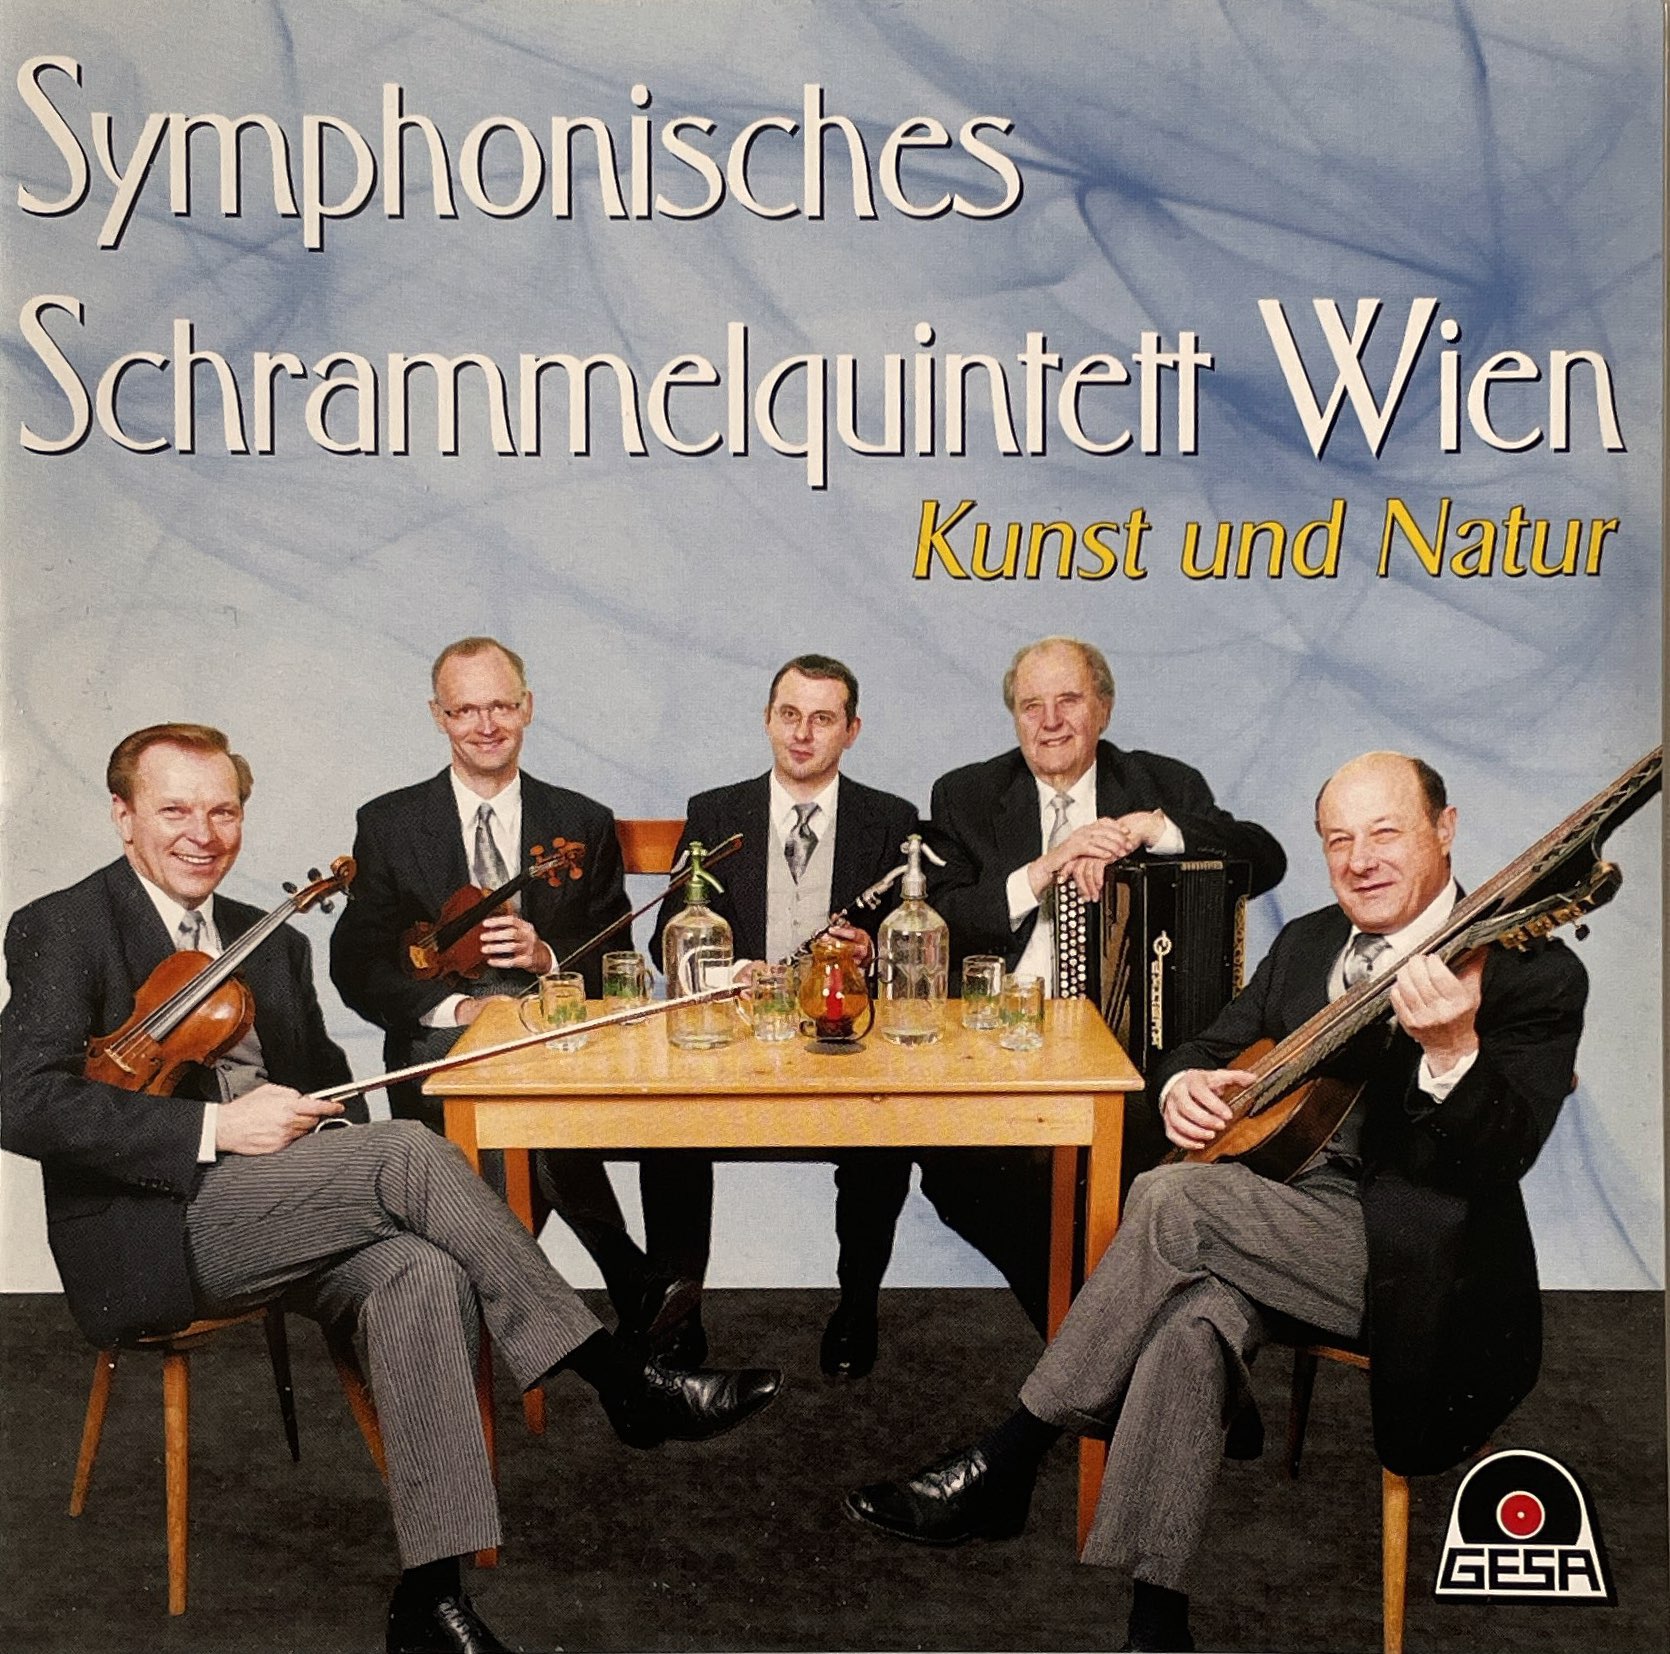 Symphonisches Schrammelquintett Wien – Kunst und Natur